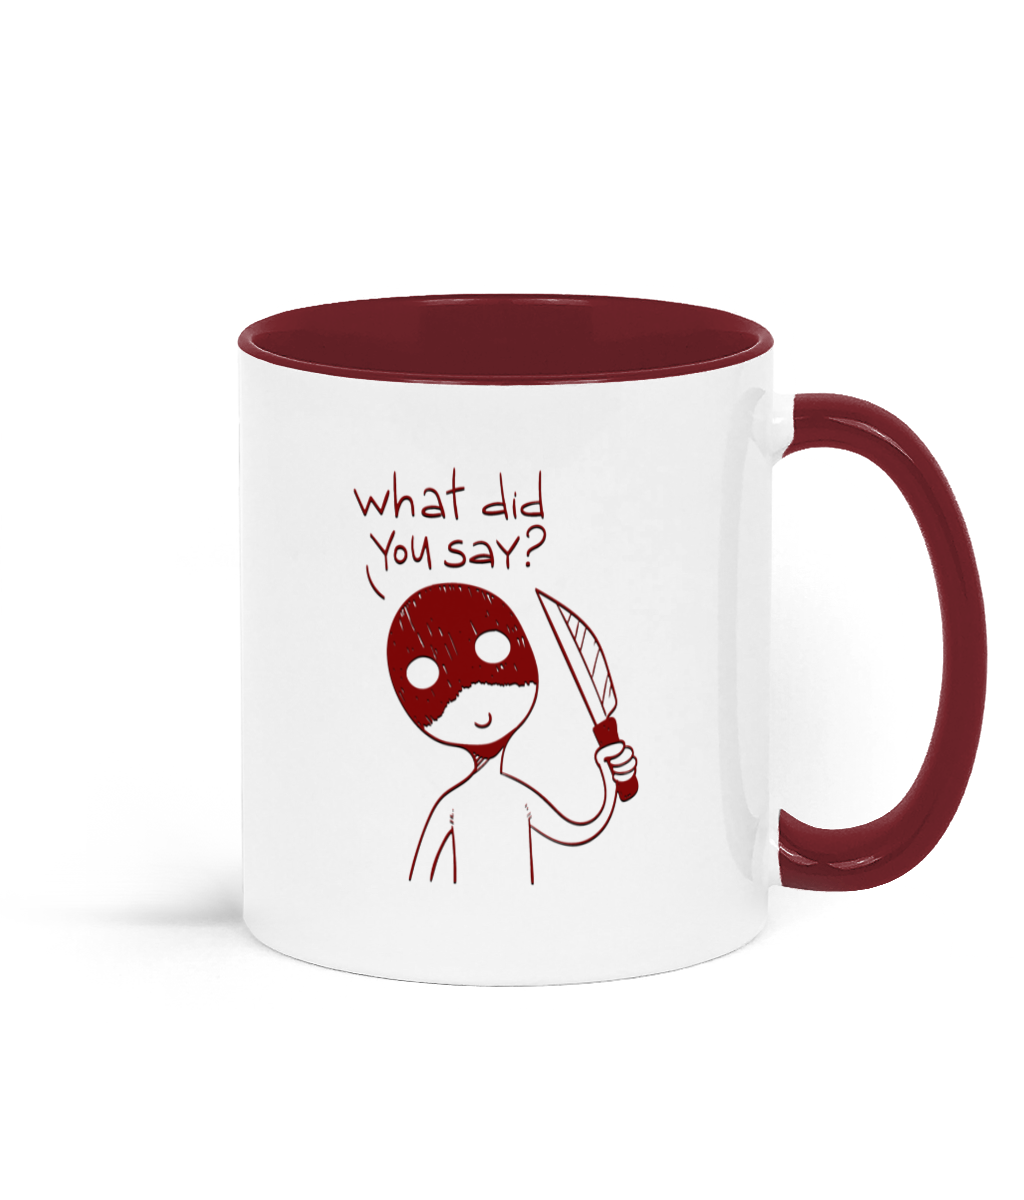 novelty mug